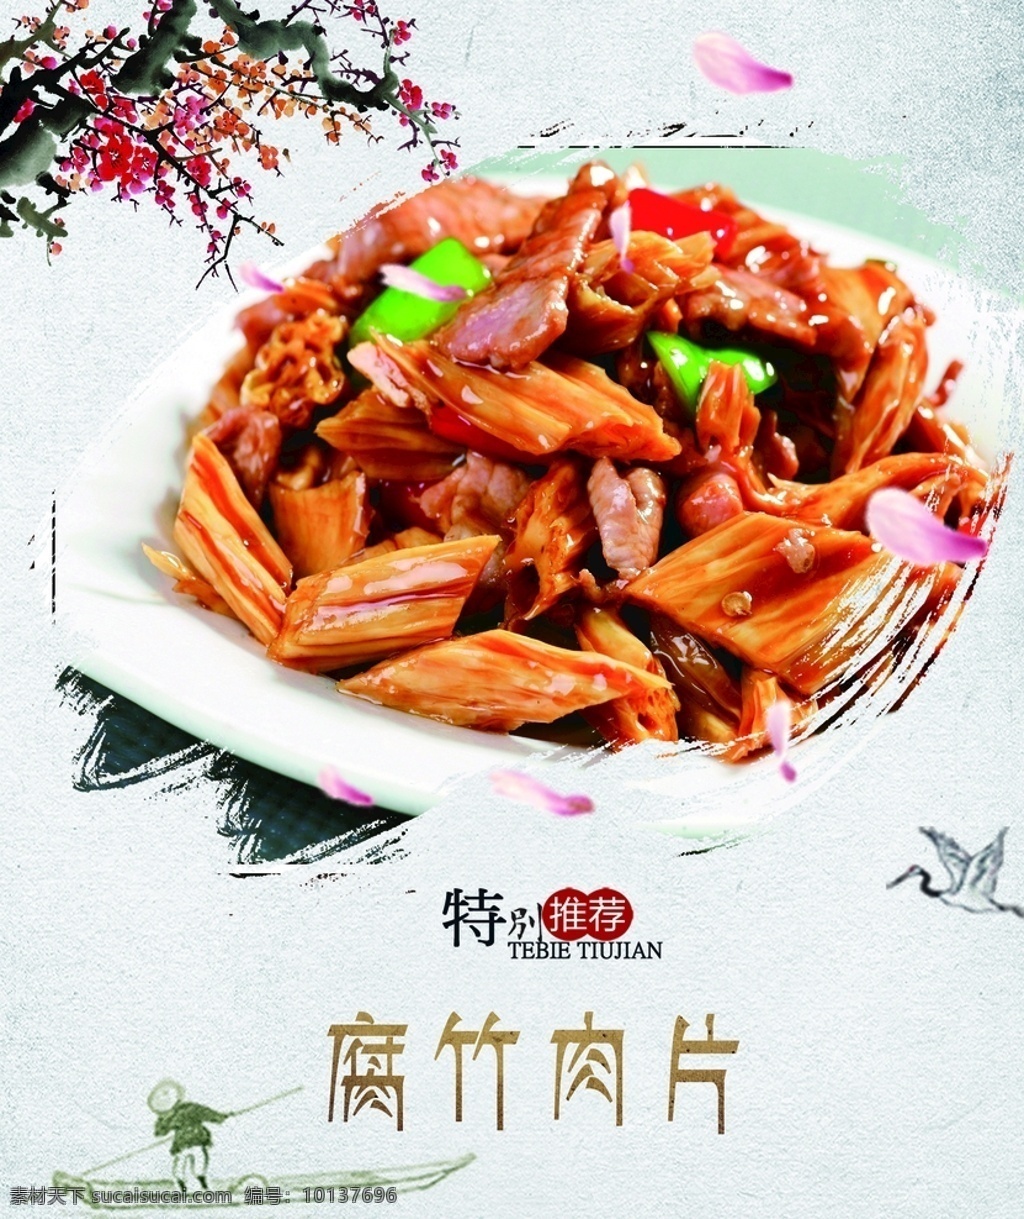 腐竹肉片 食堂灯箱 菜品 水墨风 中国风 室外广告设计